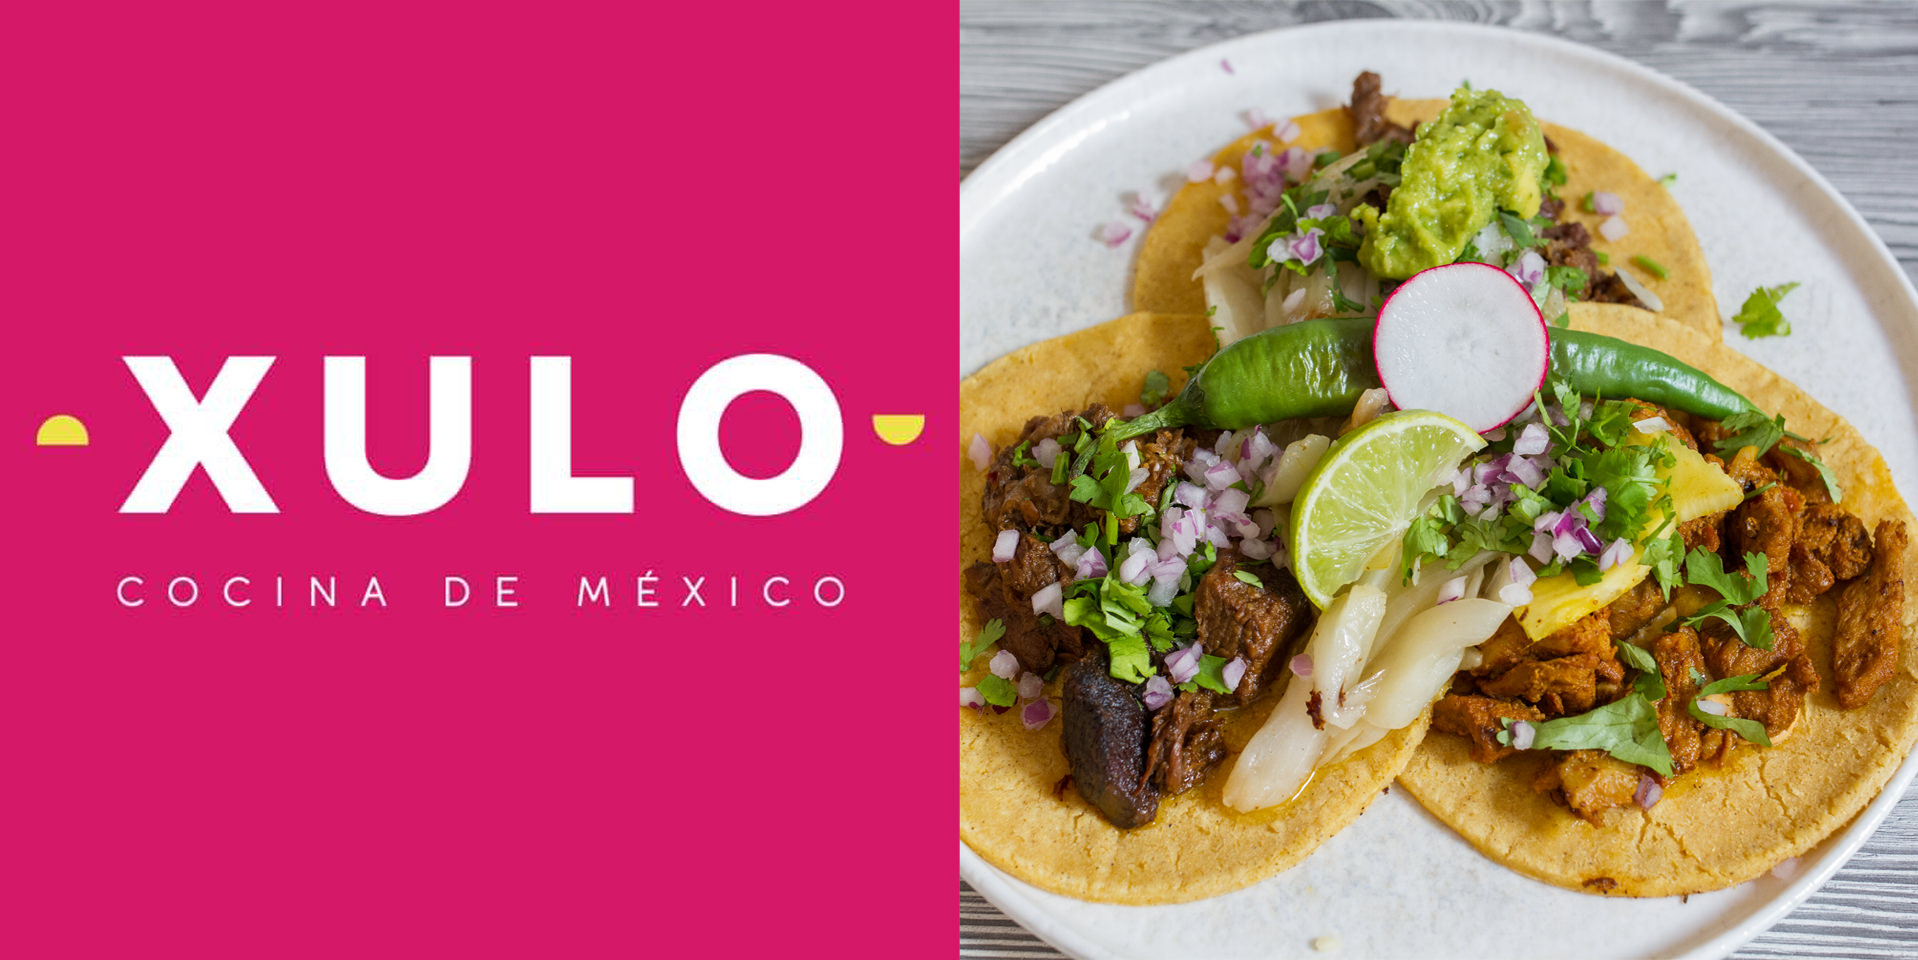 xulo restaurant restaurang cocina de mexico tacos mexican food